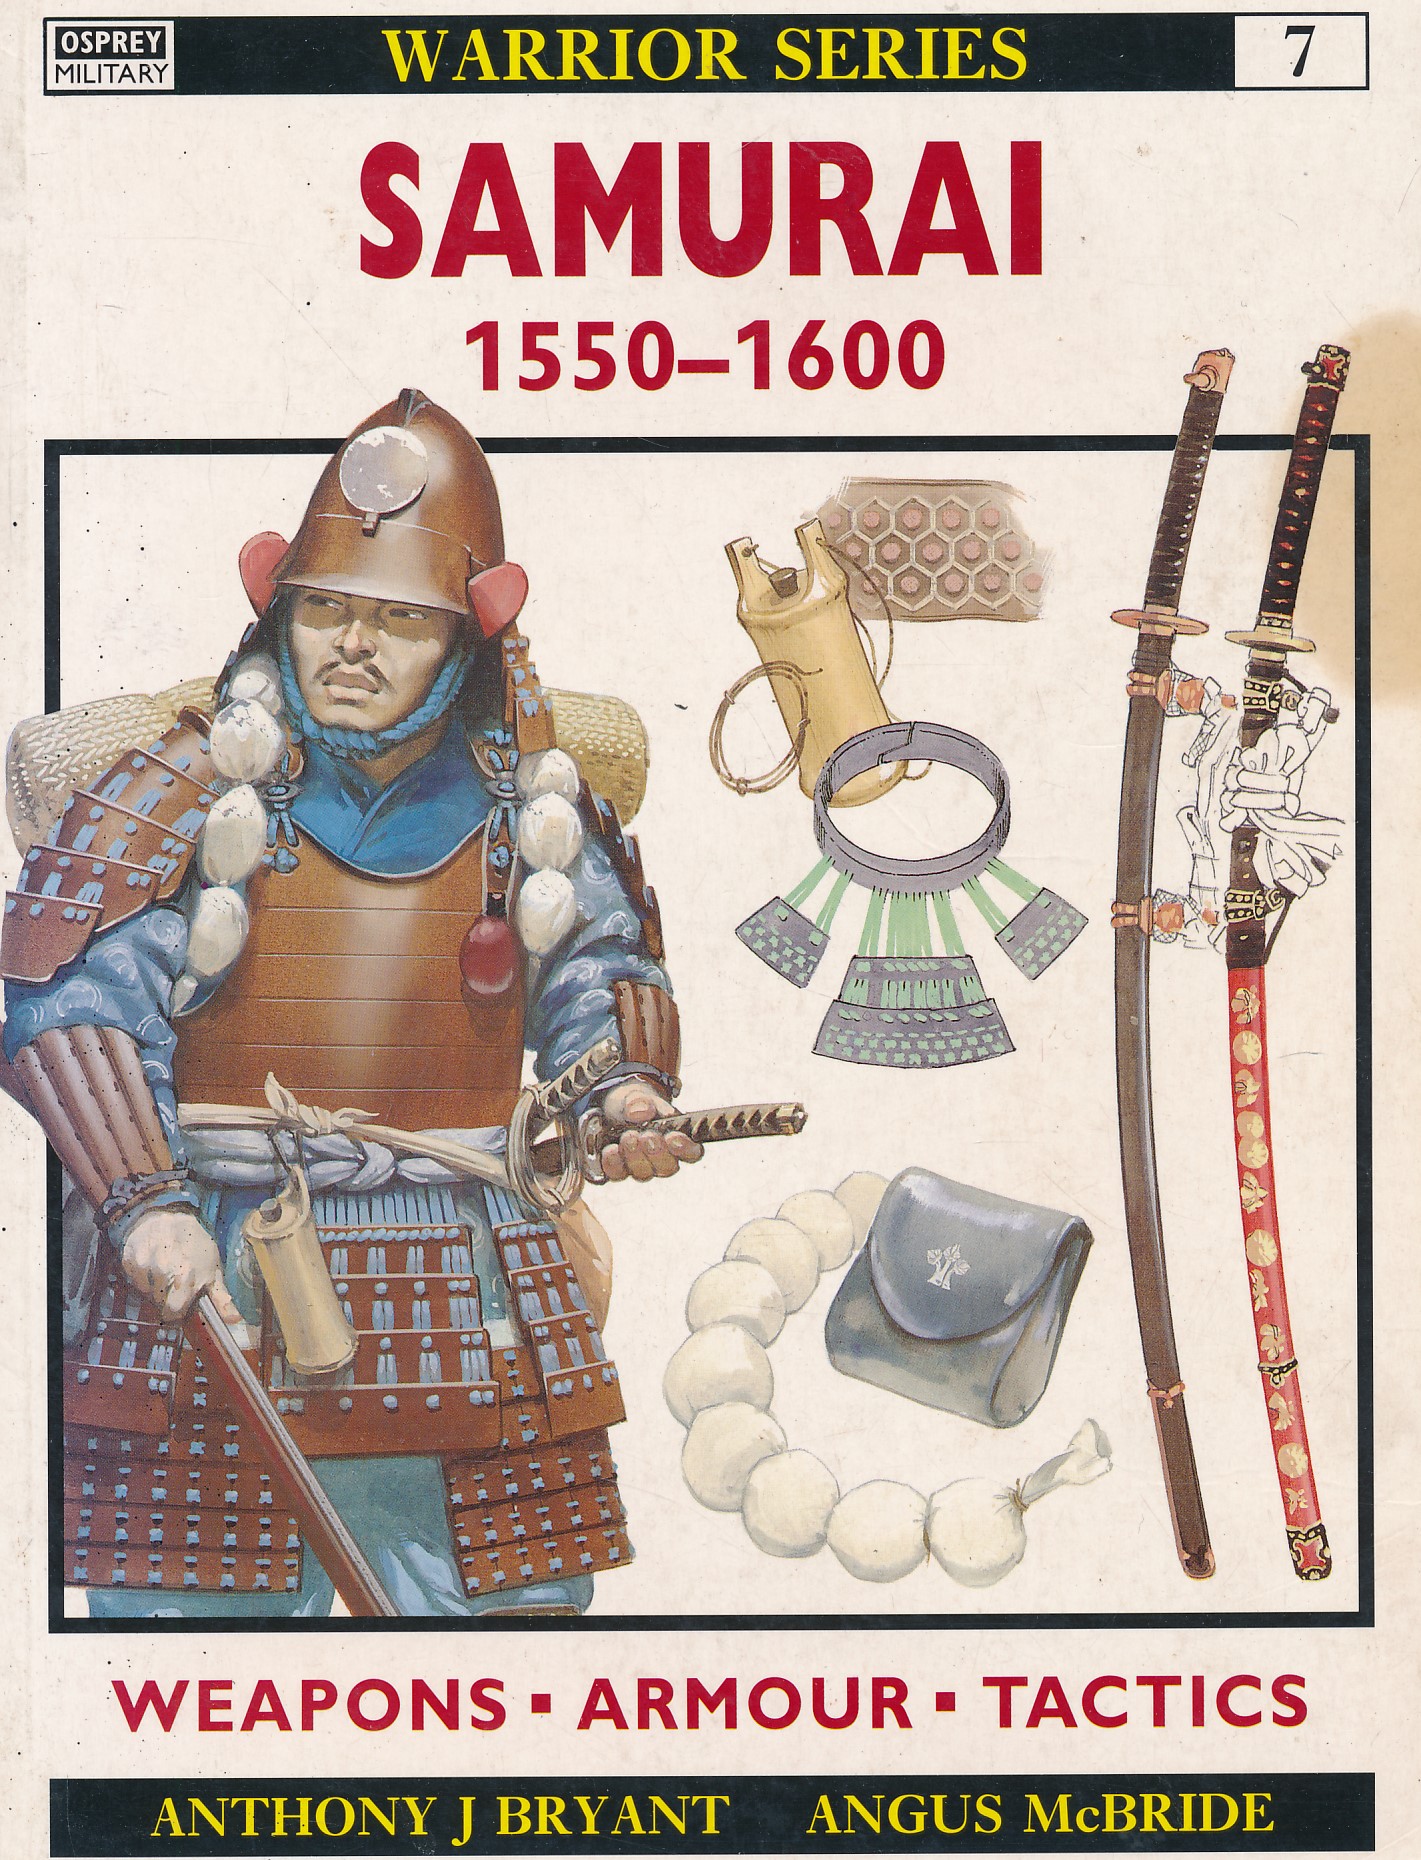 Samurai 1550 - 1600. Warrior Series No. 7.